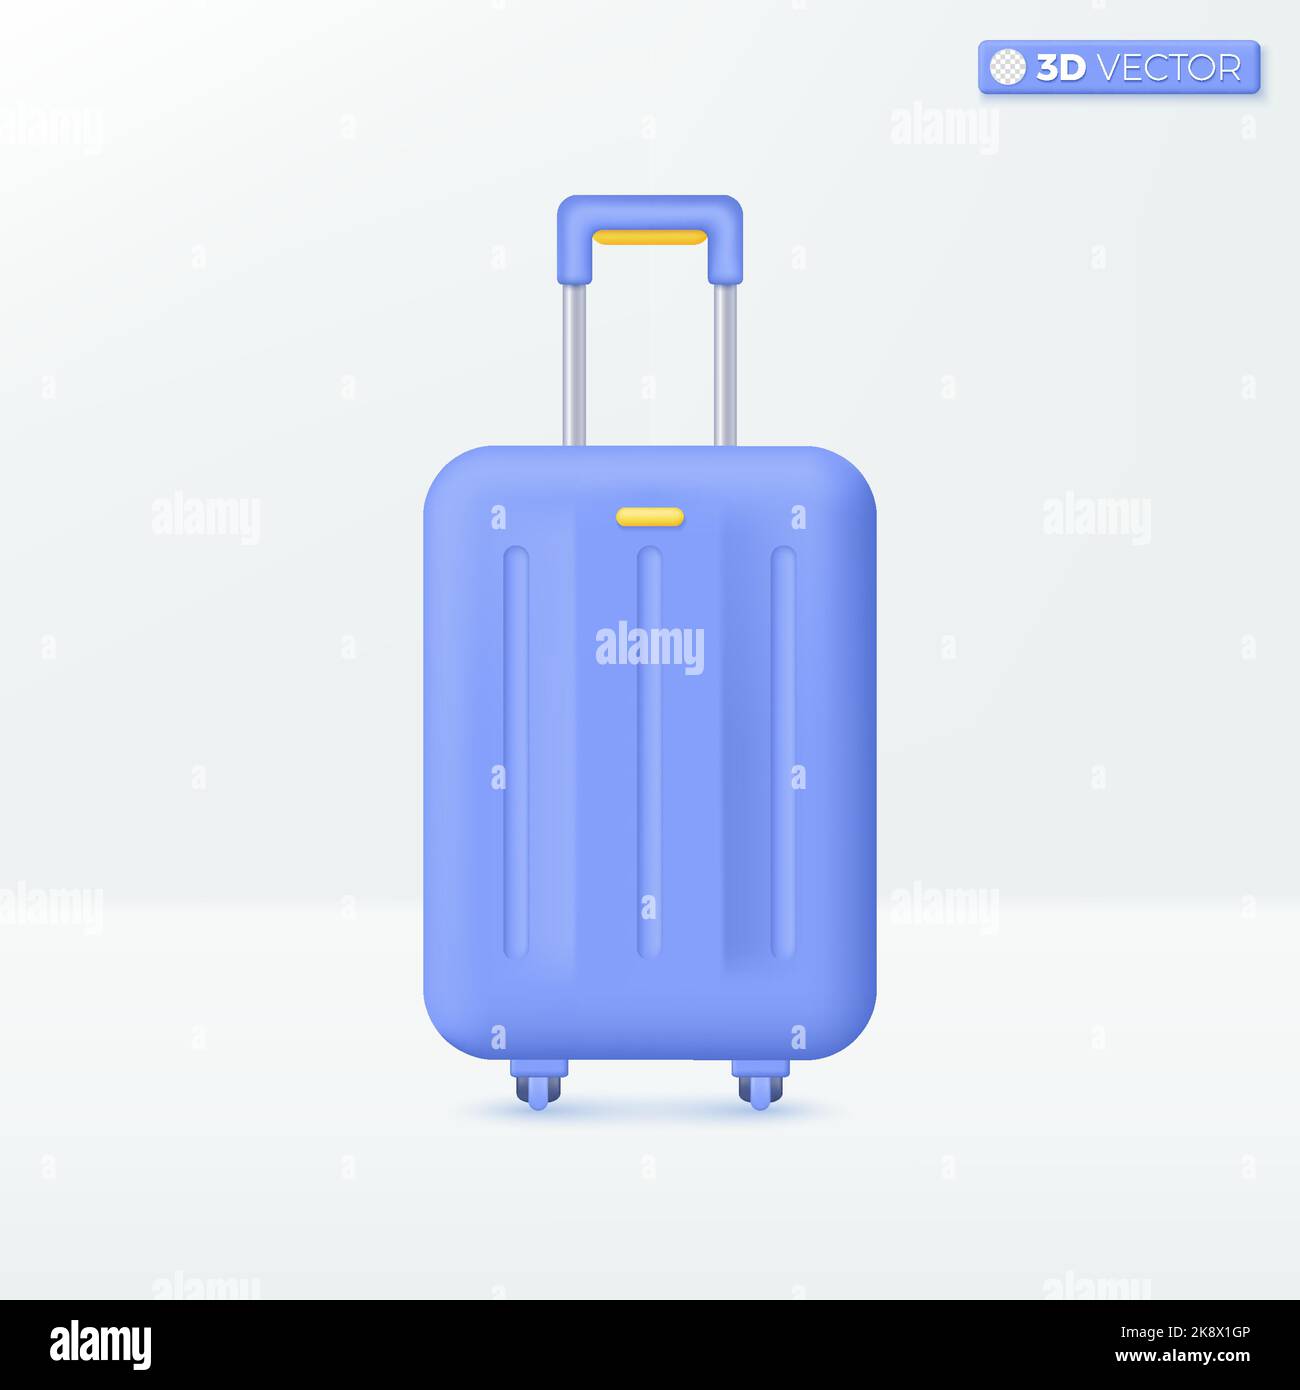 Symbole für Reisetaschen. Koffer, Reiseplanung, Service, Tourismus und Reisekonzept. 3D Vektor isoliertes Illustrationsdesign. Cartoon Pastell Minimal Stock Vektor